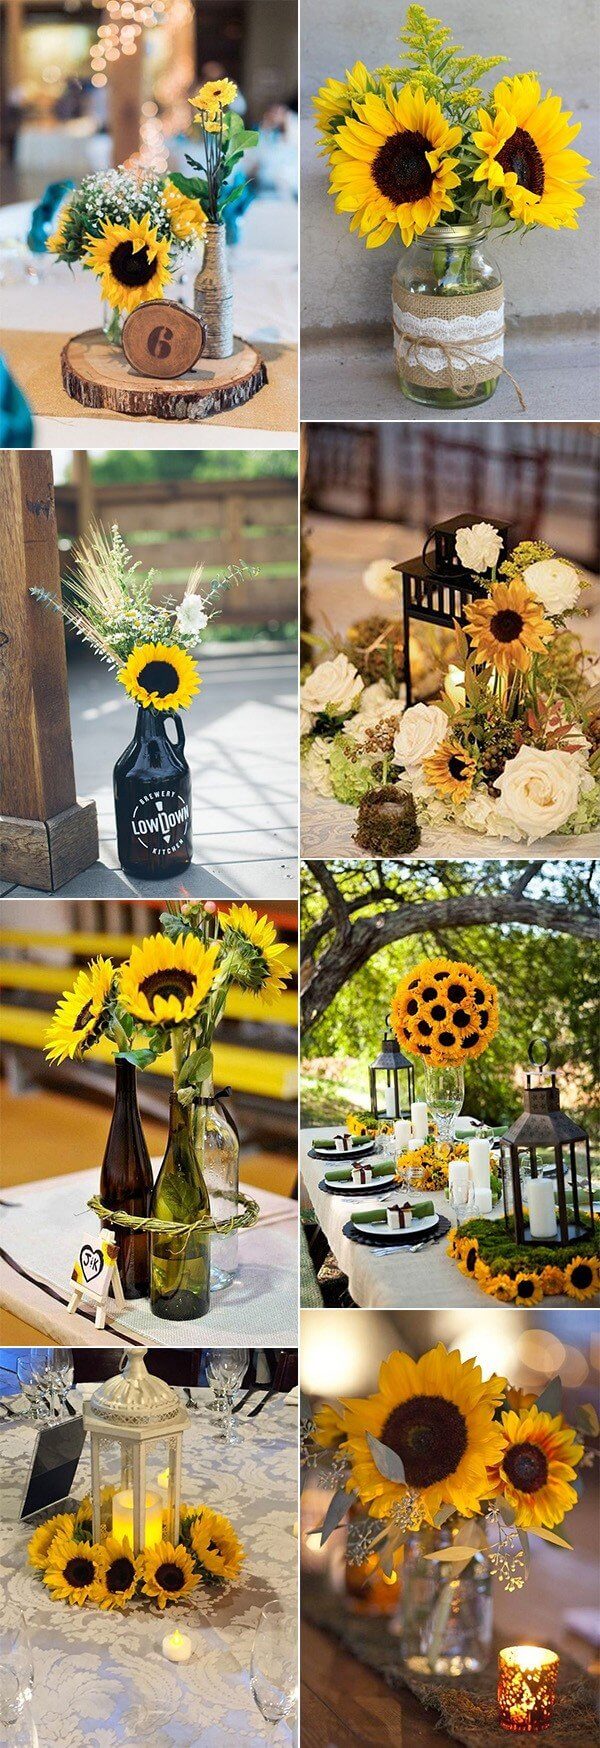 Sunflower Wedding Centerpiece Ideas | Creative & Rustic Backyard Wedding Ideas For Summer & Fall